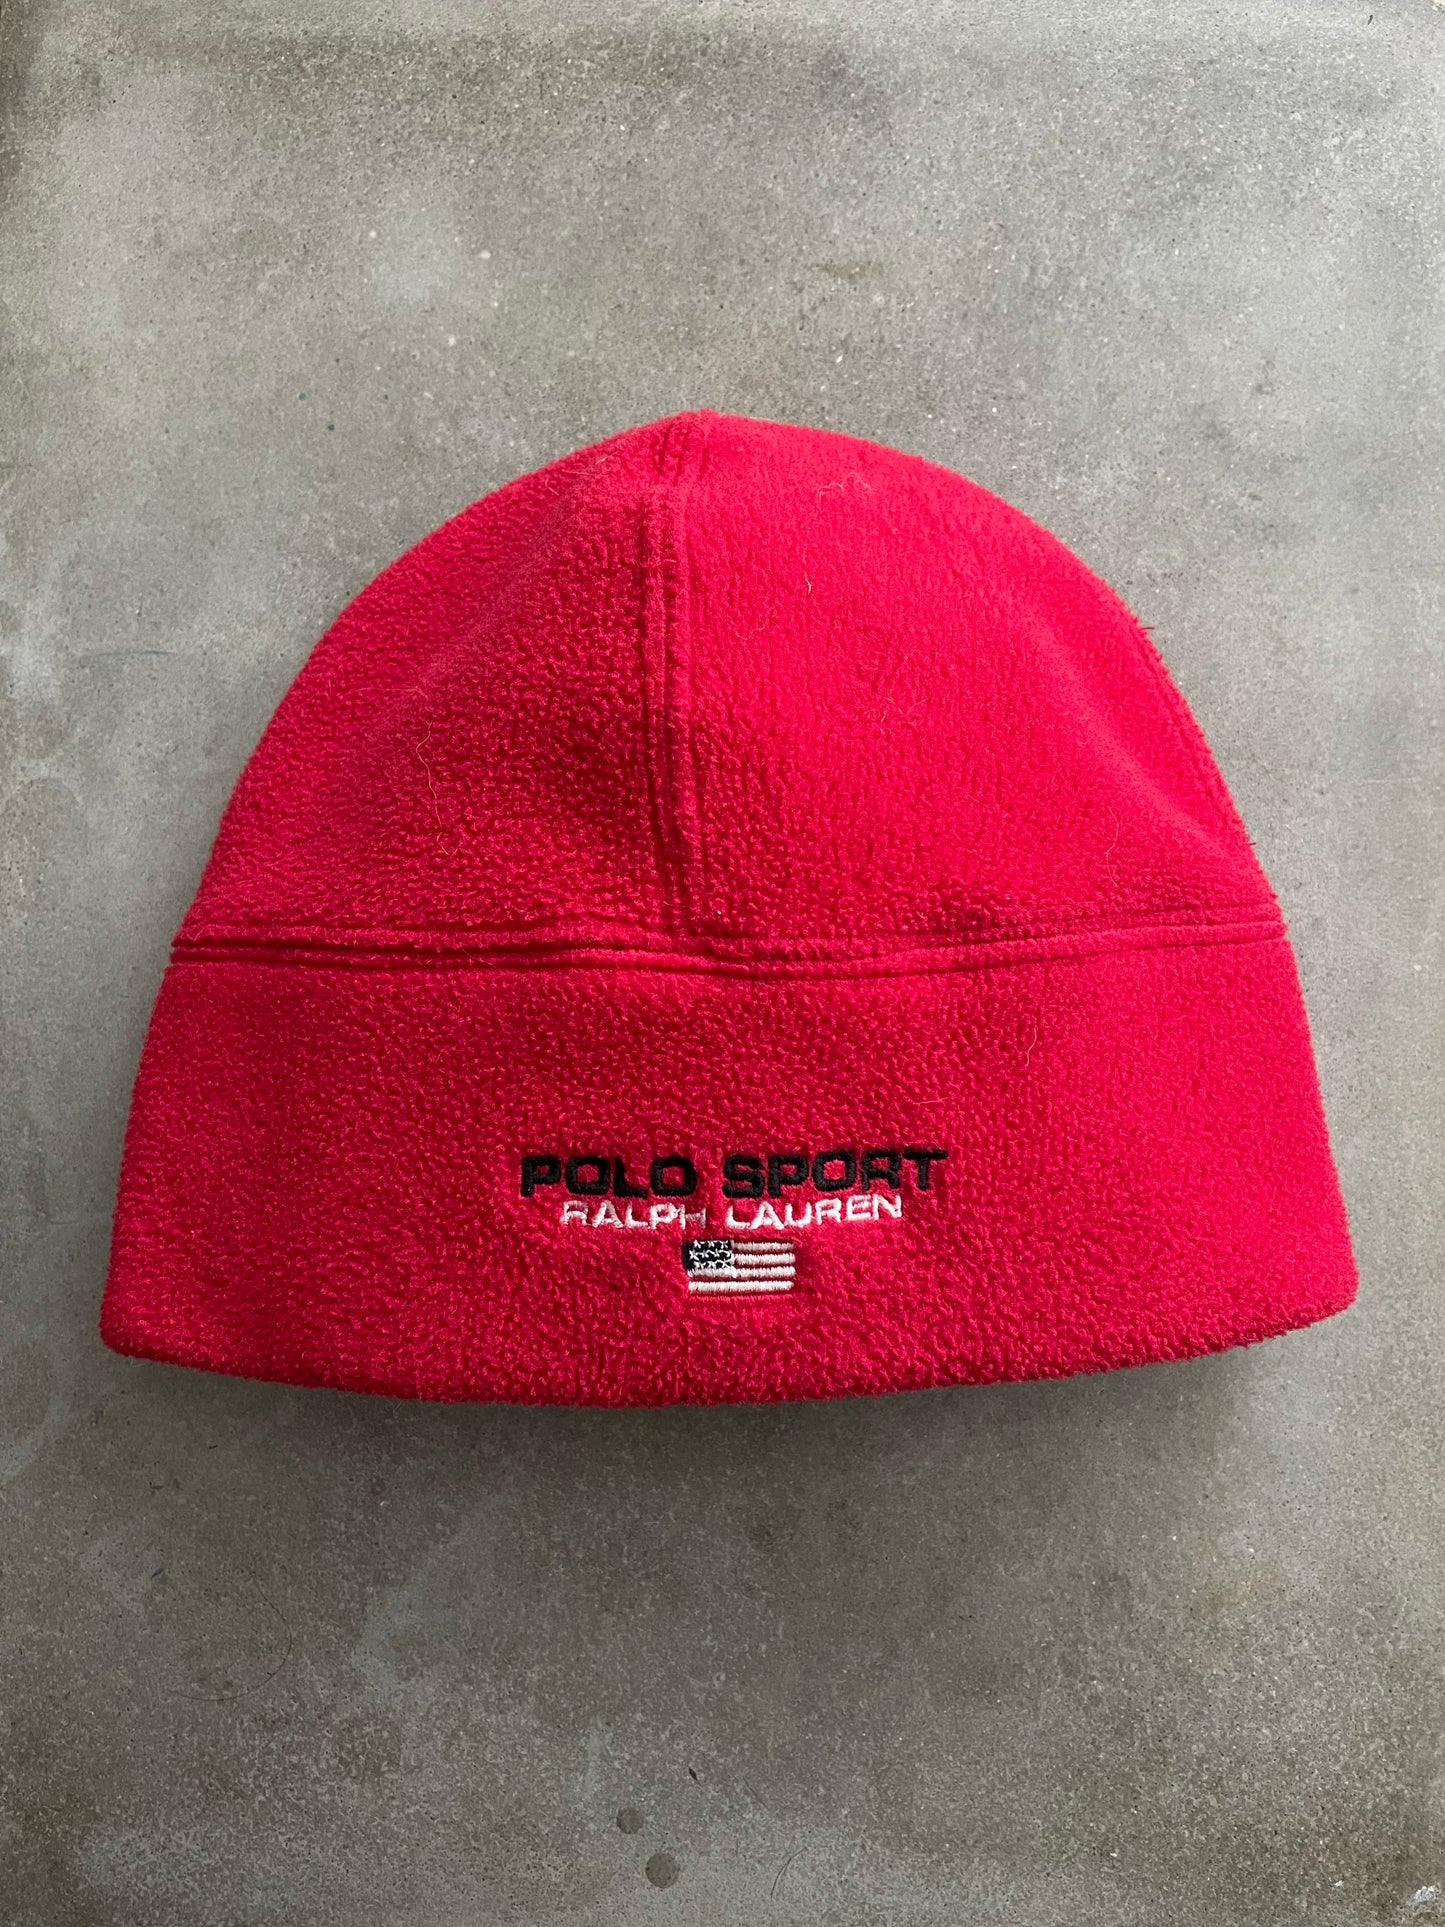 Polo Sport Fleece Winter Hat